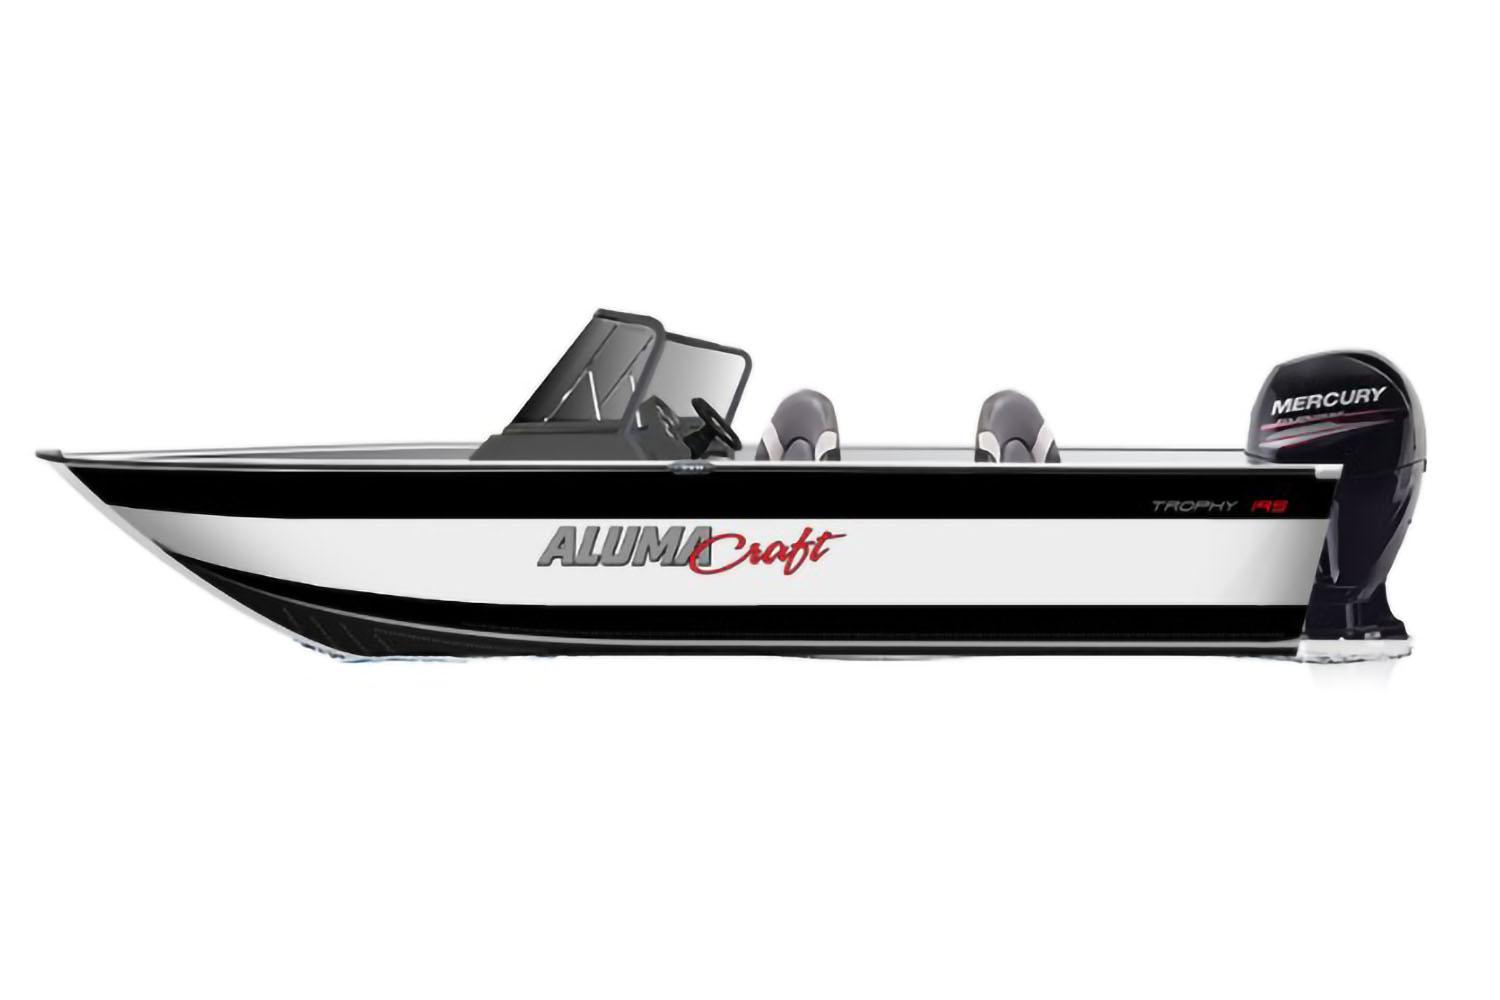 Toyota Tundra & Alumacraft Boat